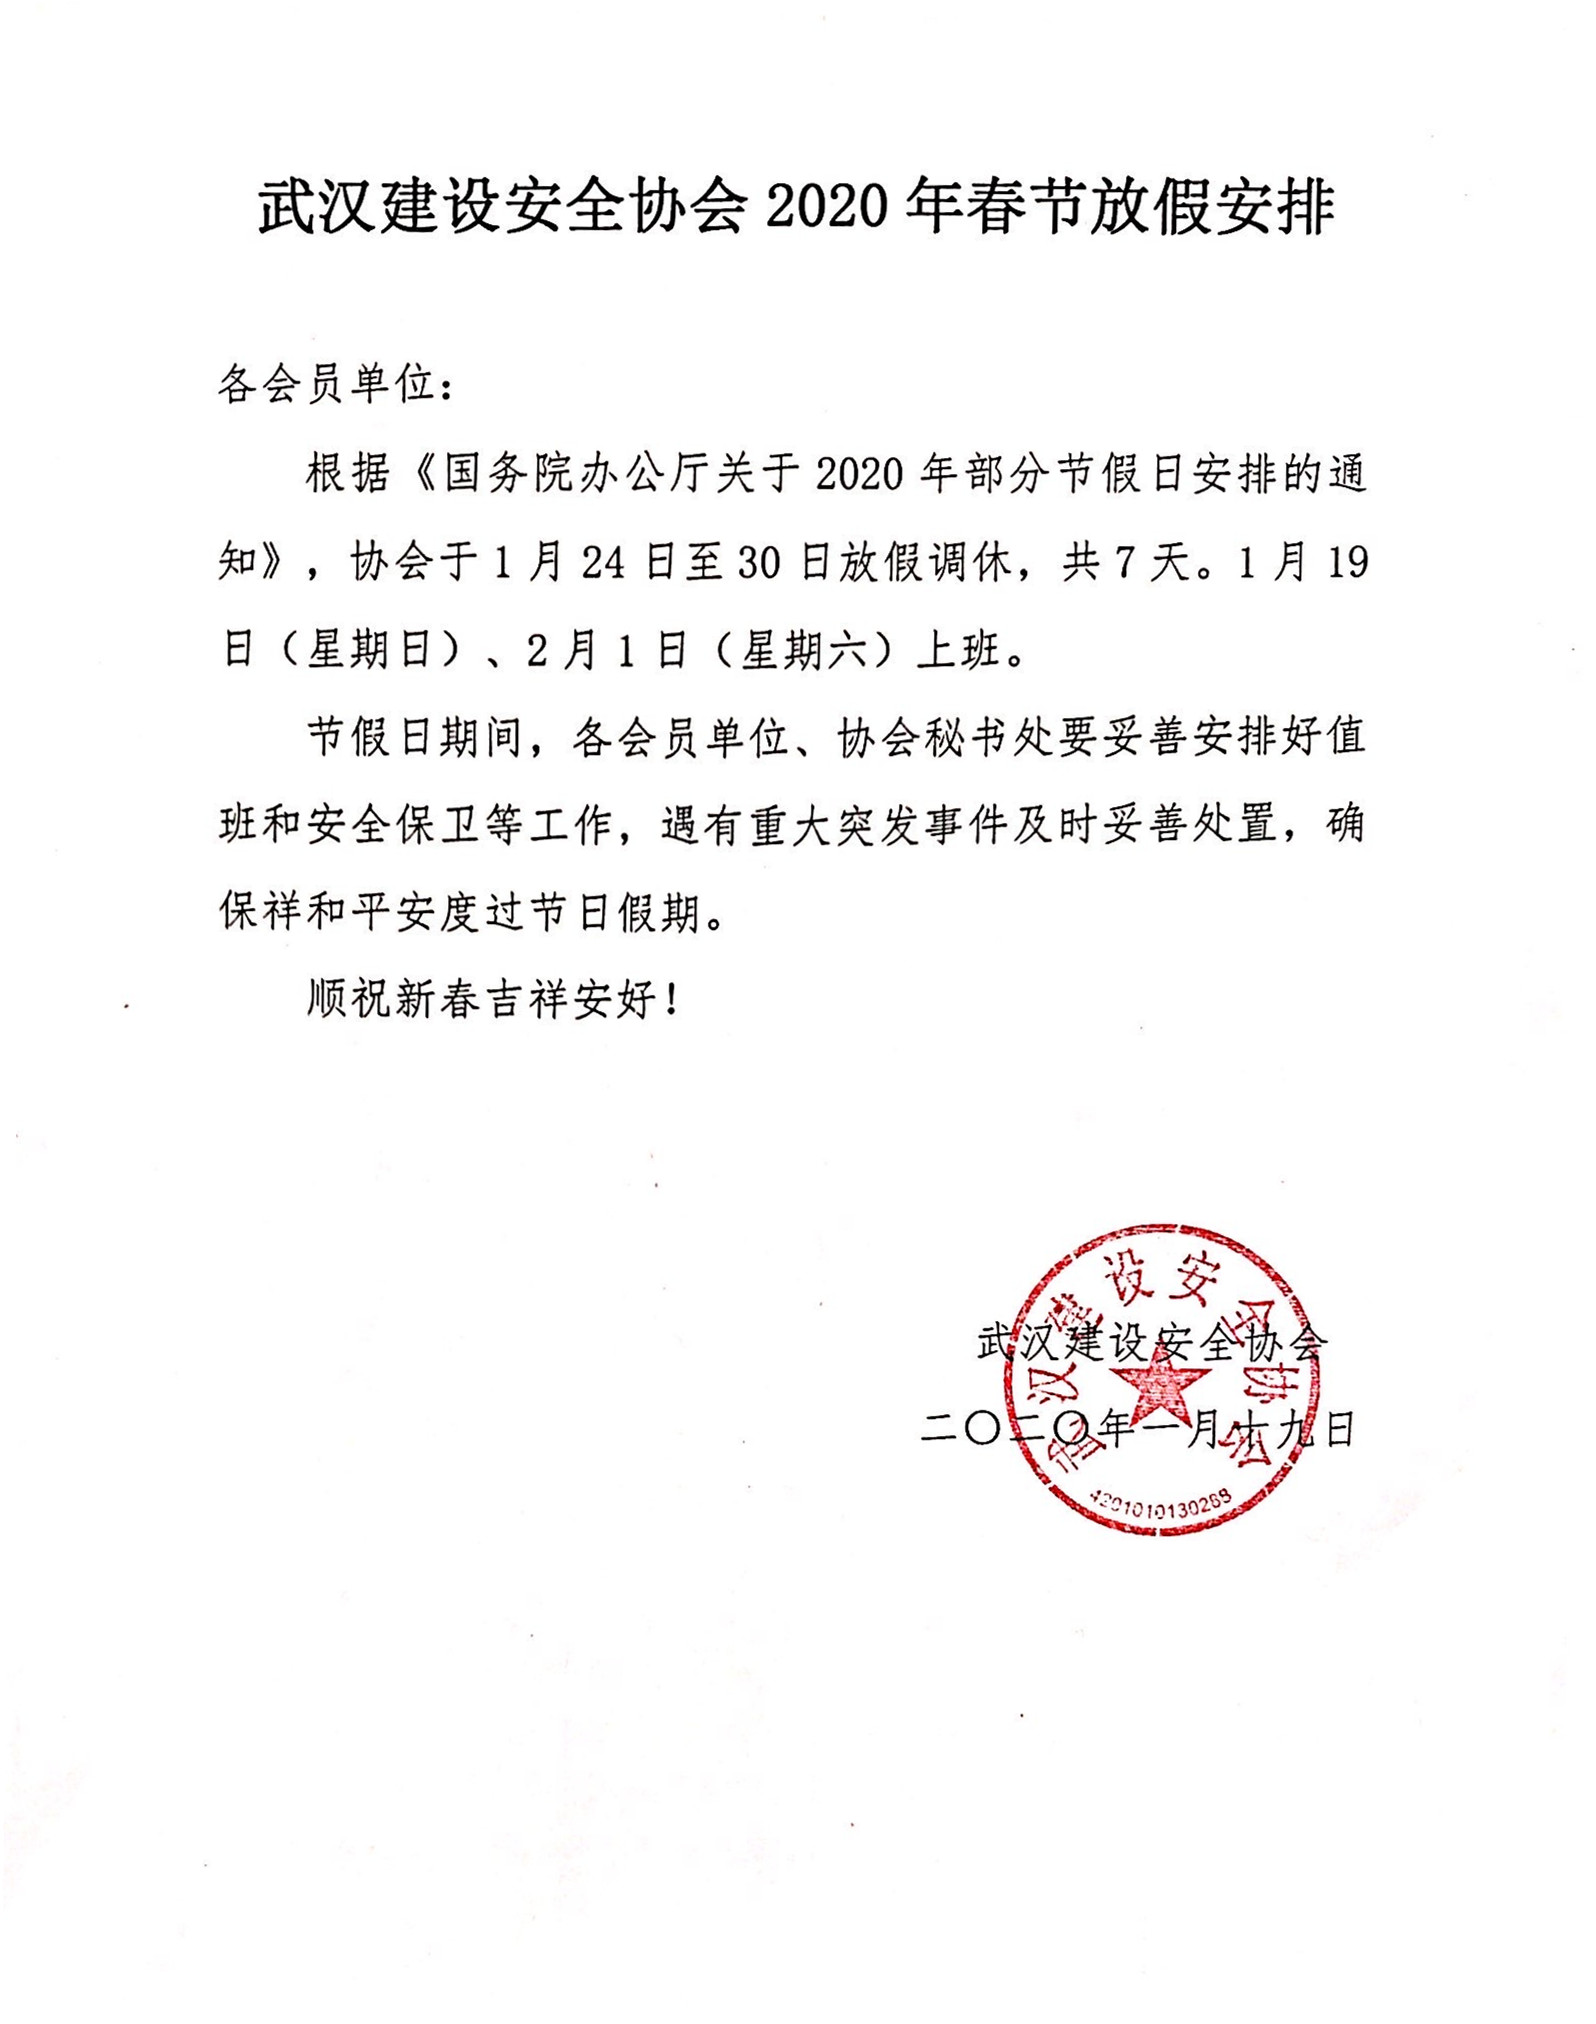 武汉建设安全协会2020年春节放假安排